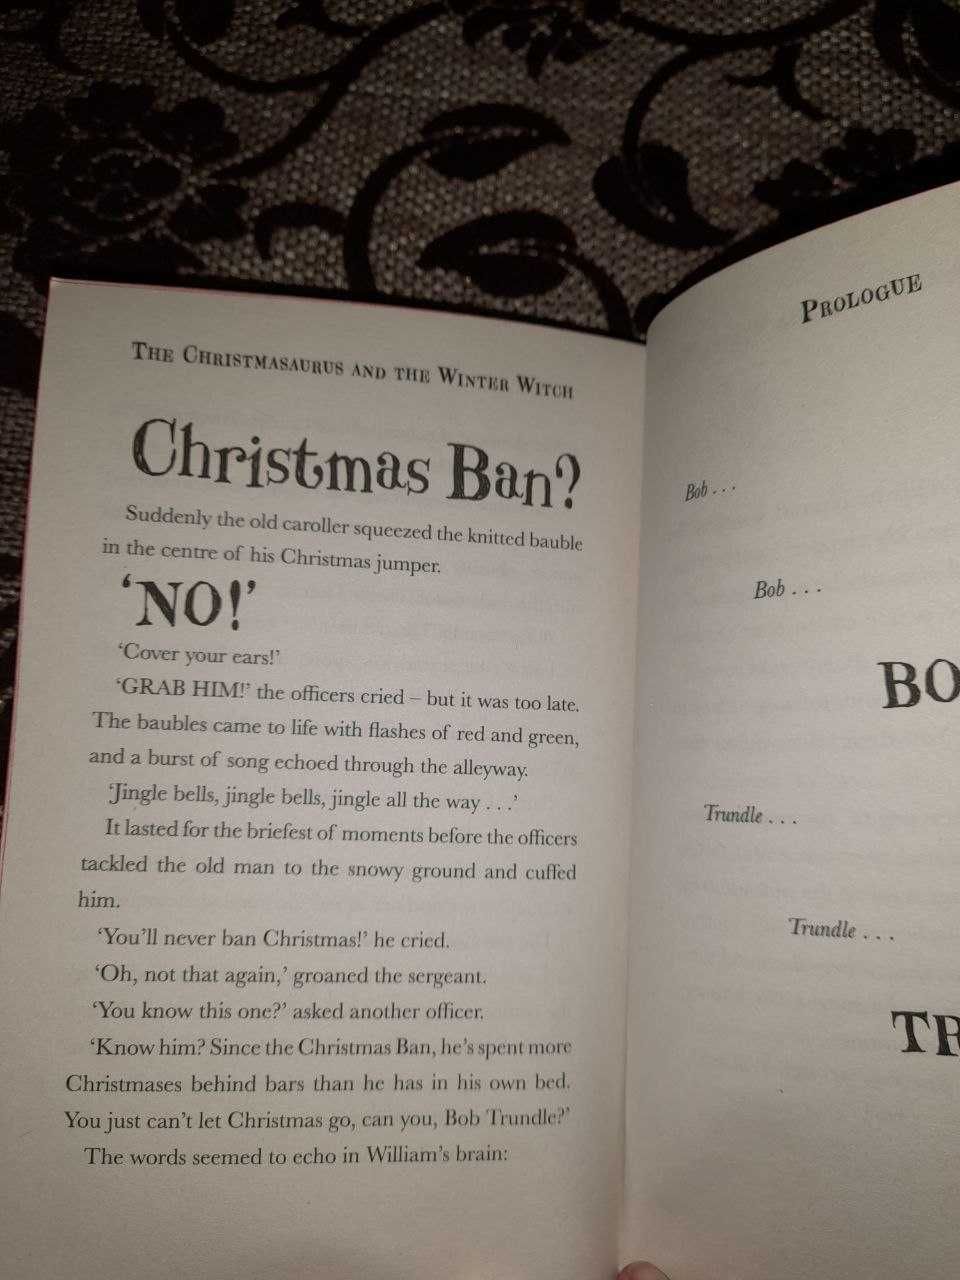 Читанка на английском языке The Christmasaurus автор Tom Fletcher